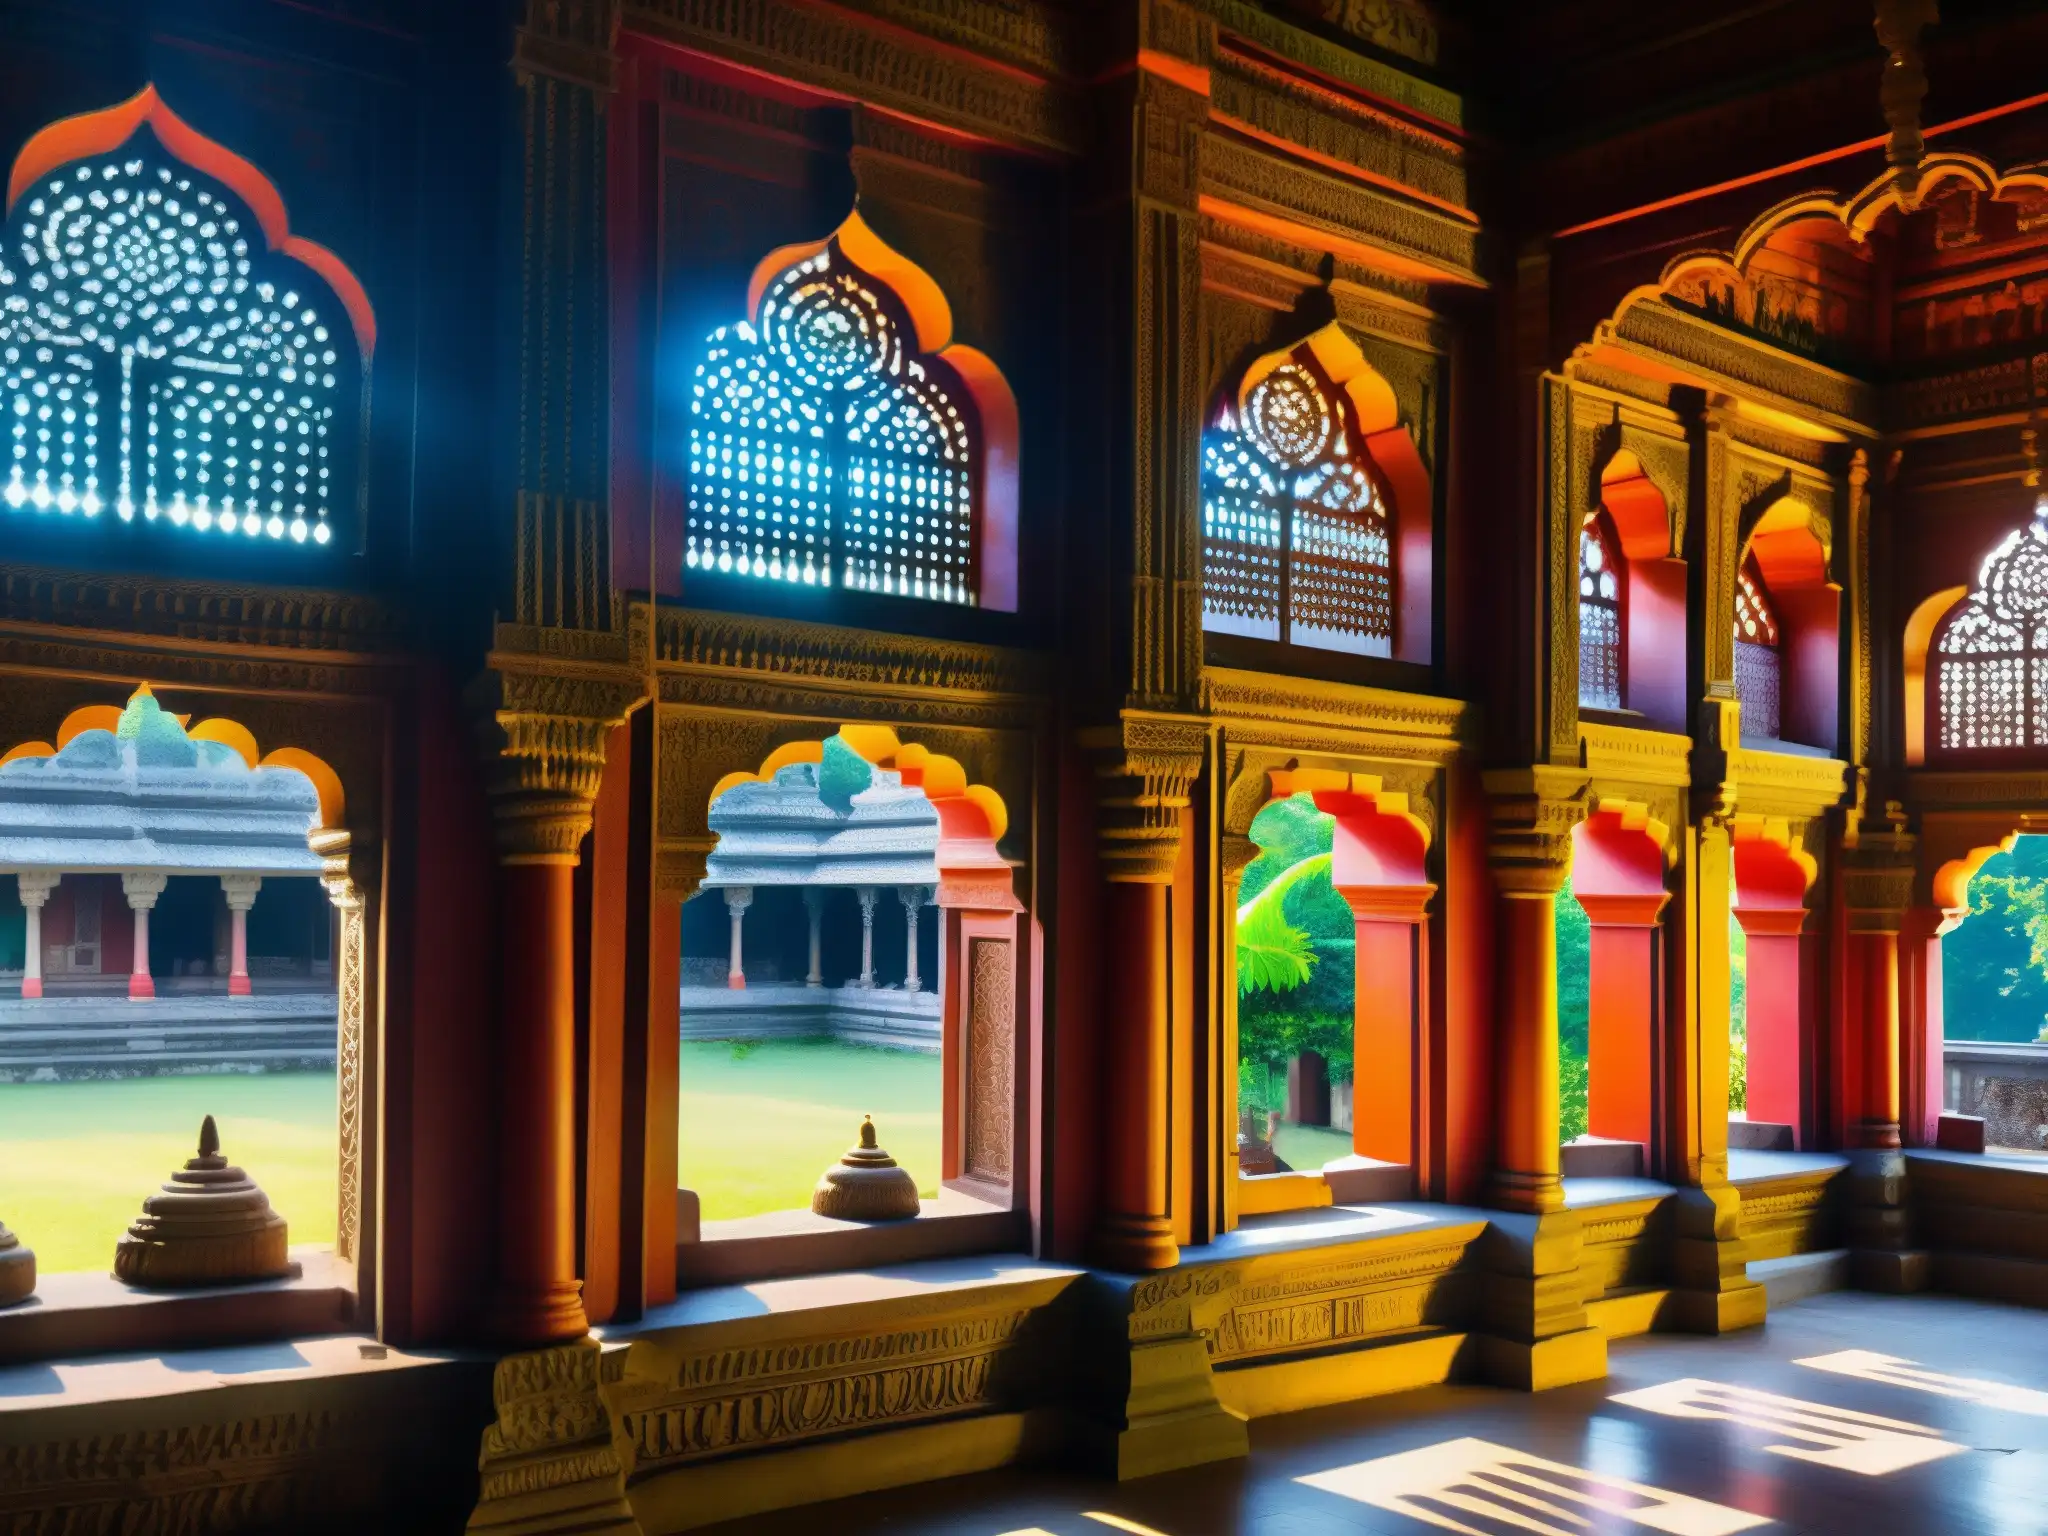 Detalles arquitectónicos del antiguo templo Mehendipur Balaji, con luz solar y visitantes, creando una atmósfera de Tragedia Novia Mehendipur Balaji